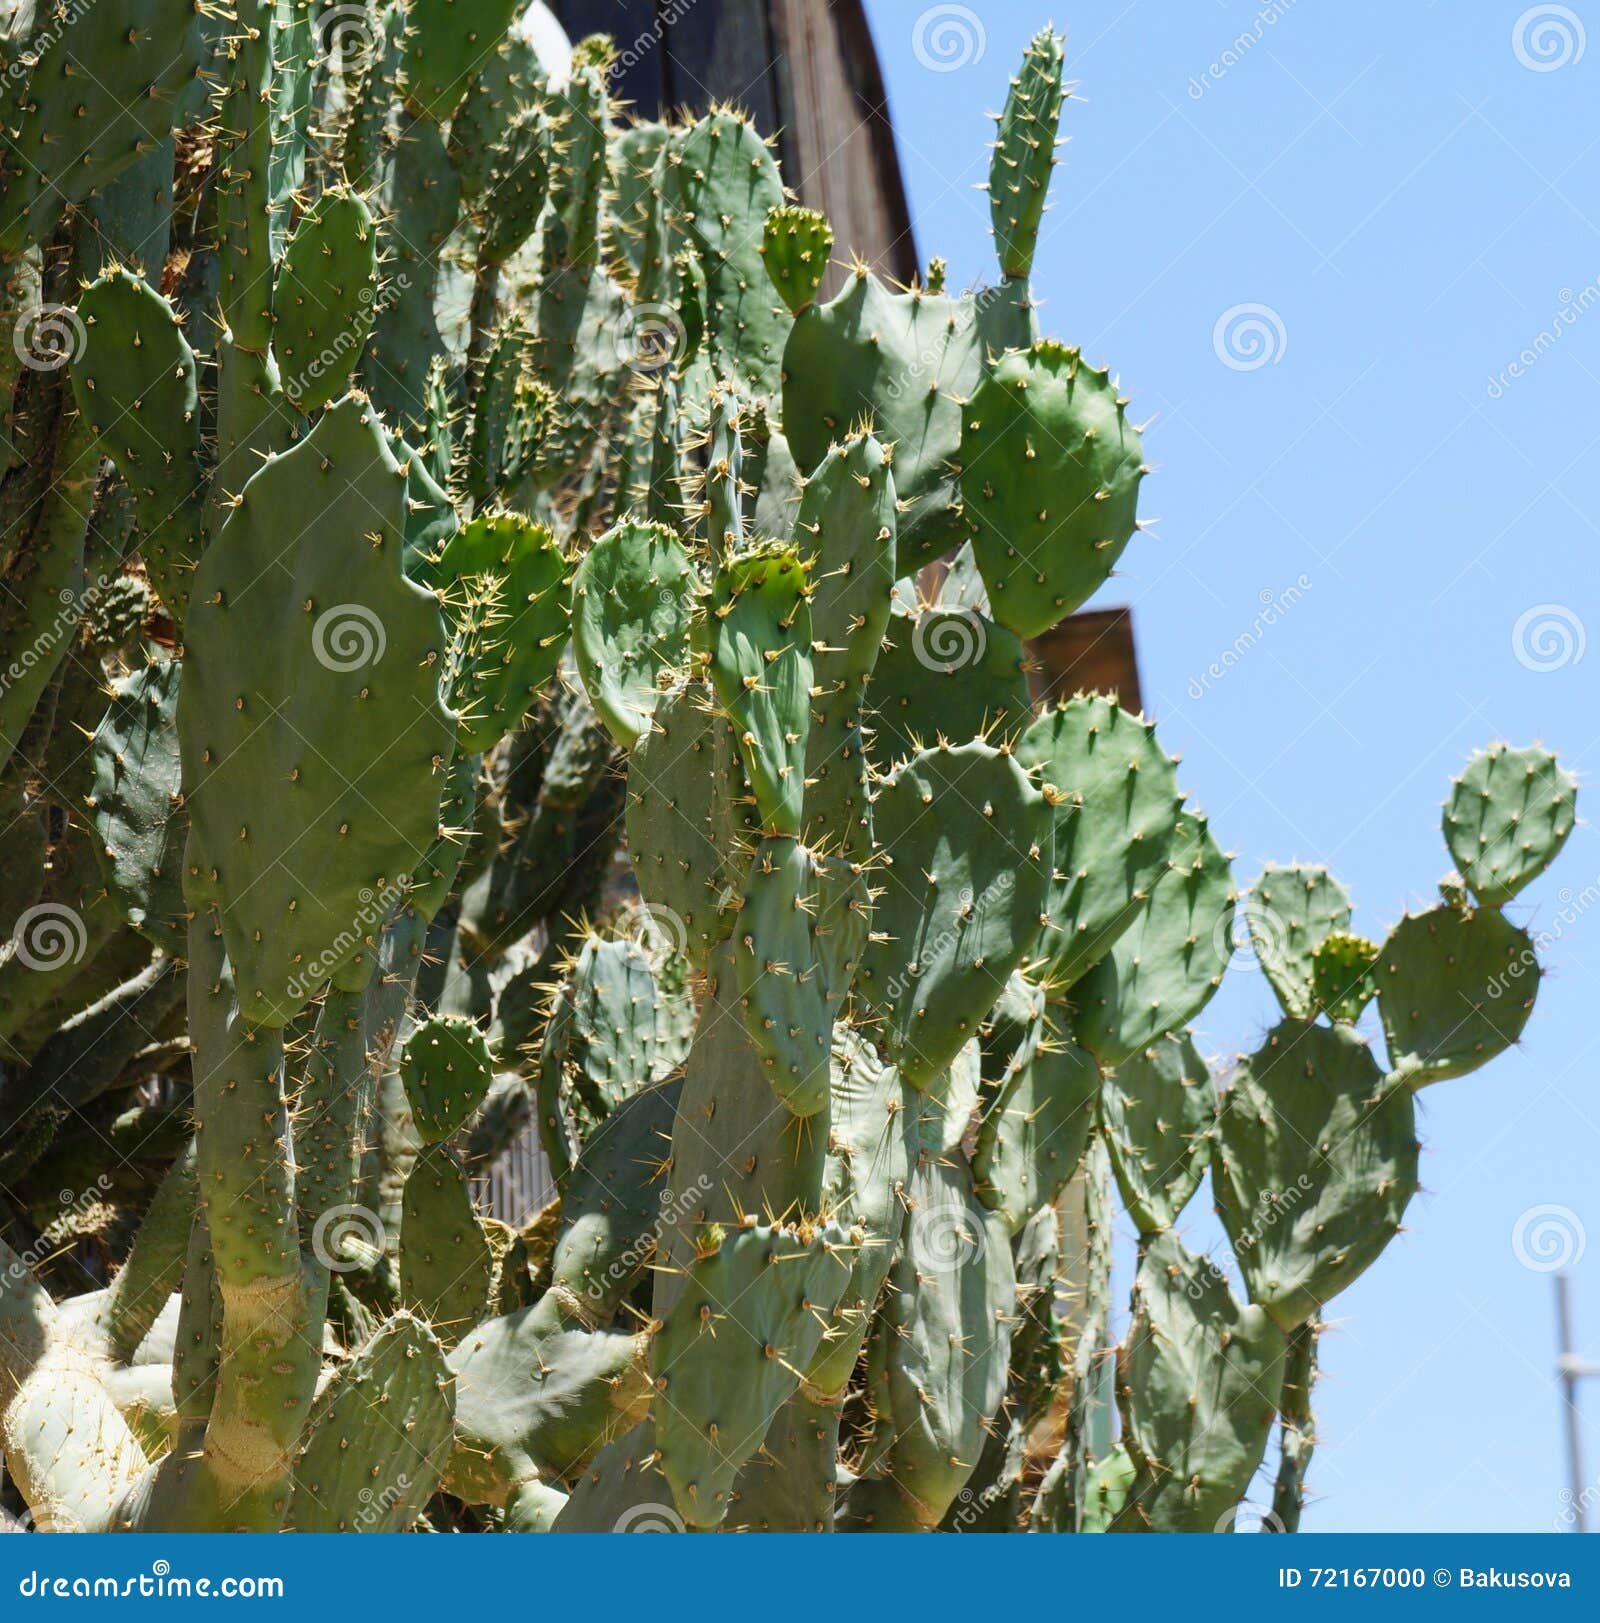 opuntia robusta cactus